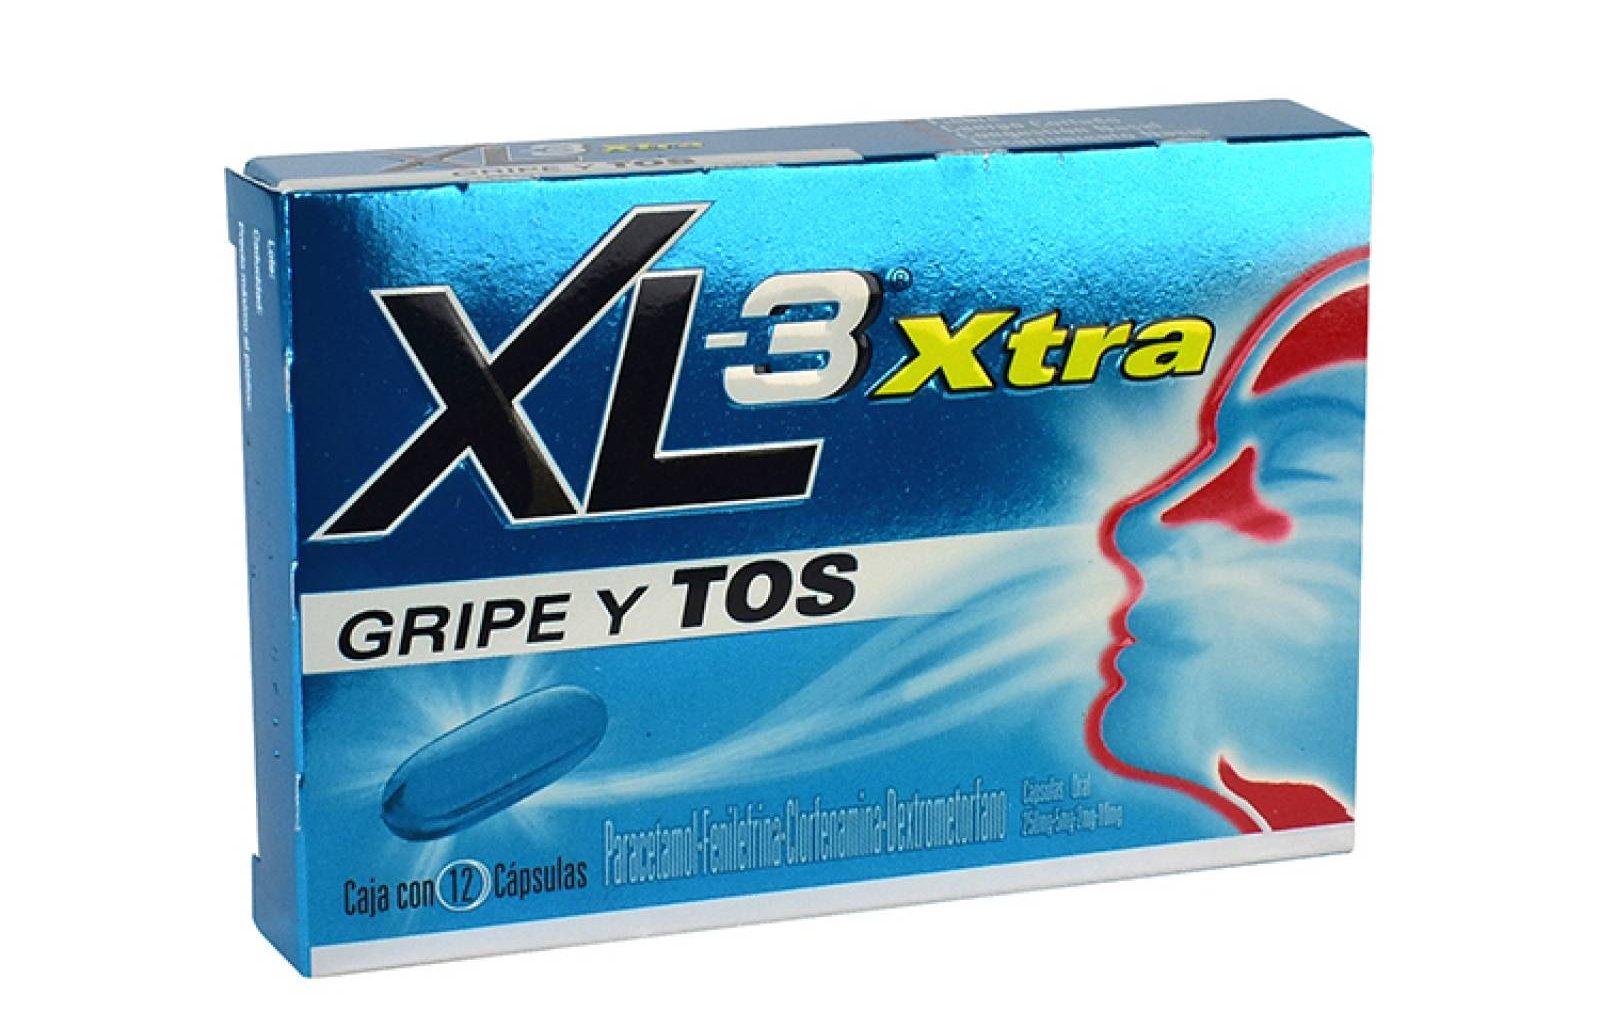 XL-3 Xtra: ¿Qué es y para qué sirve?